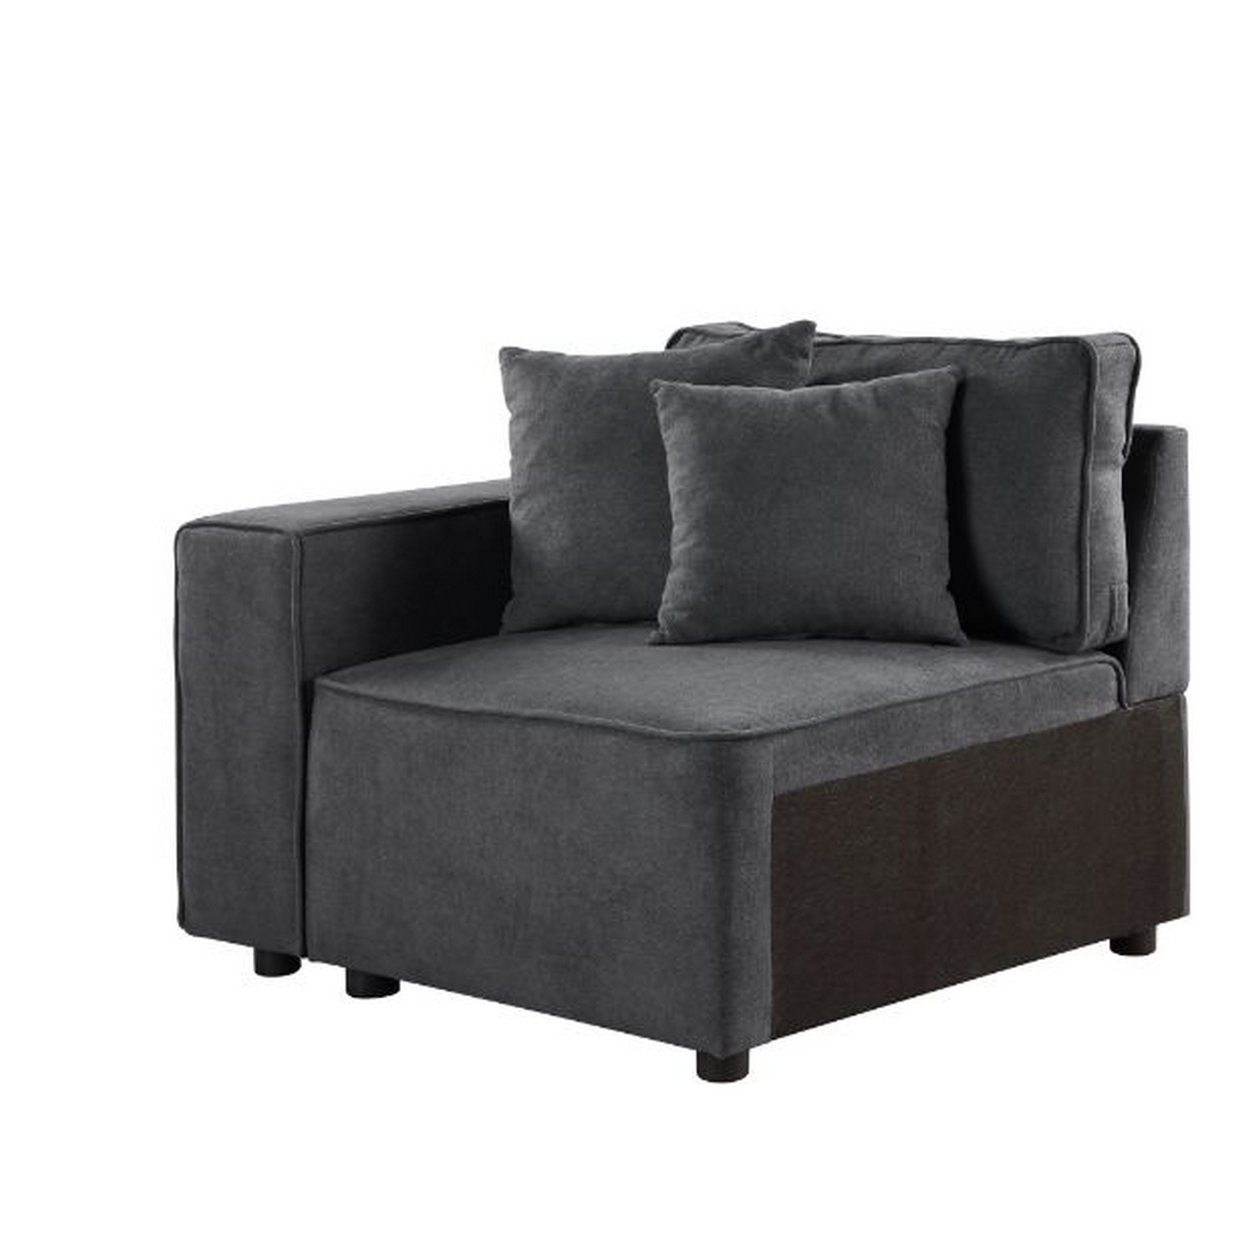 Modular Left Facing Chair With Loose Back Pillow, Gray- Saltoro Sherpi